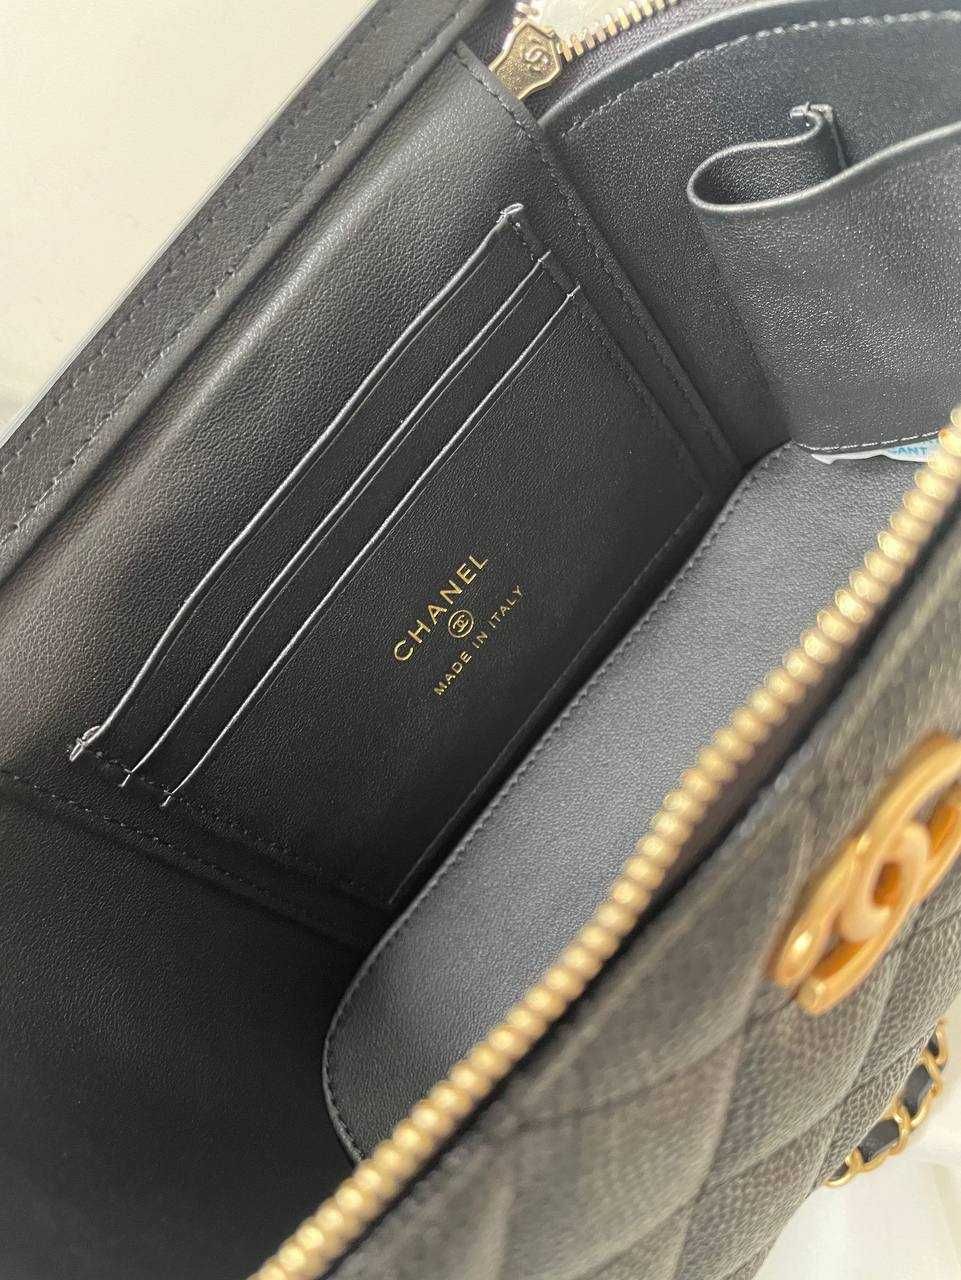 Оригинальная сумочка от Chanel